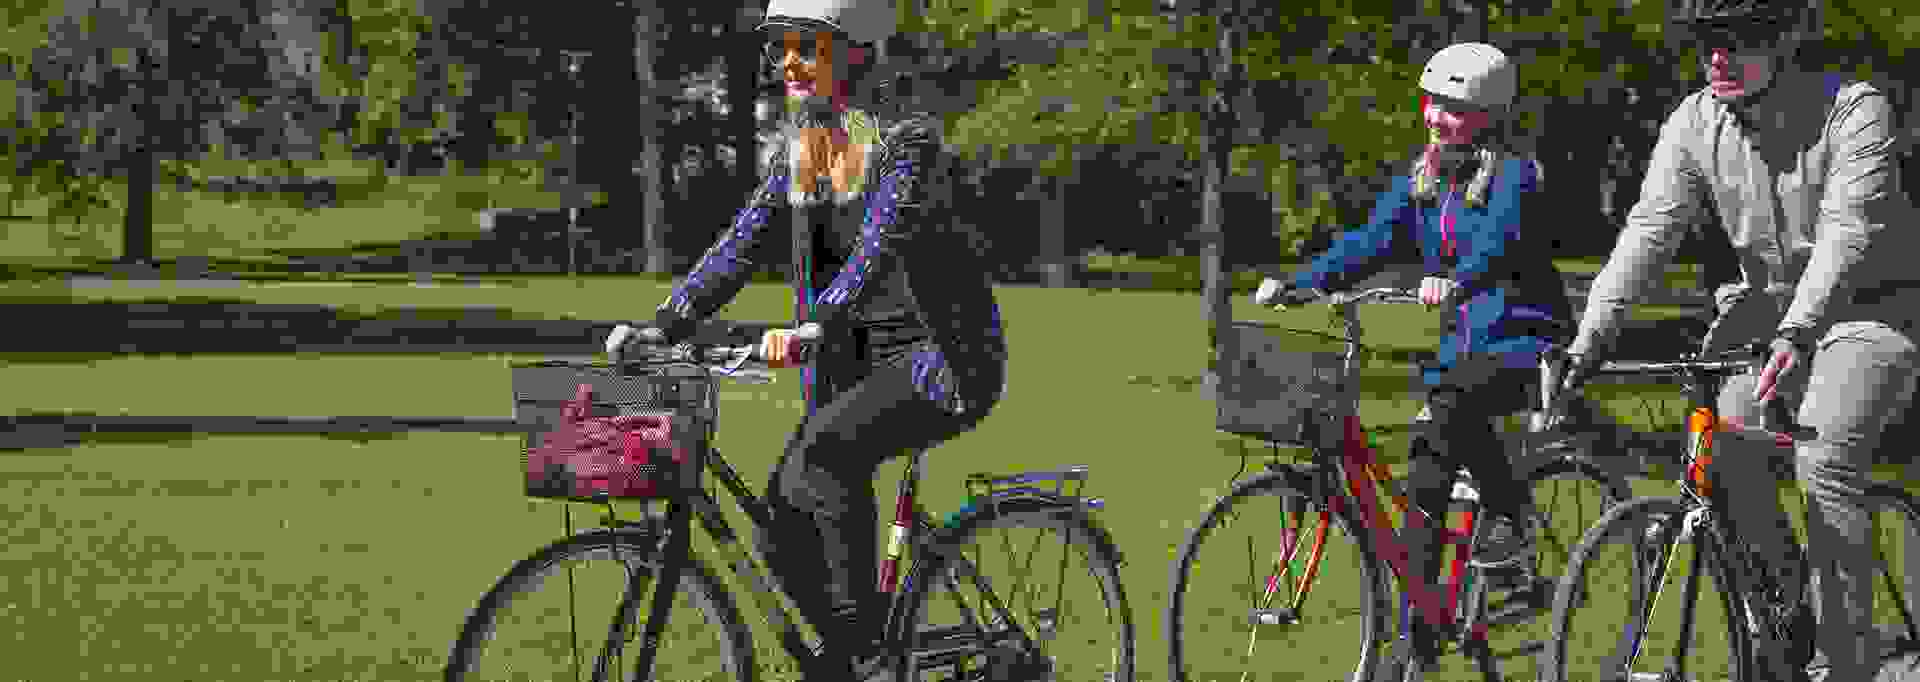 Kolme ihmistä pyöräilee hymyillen puistossa kesäisessä säässä.